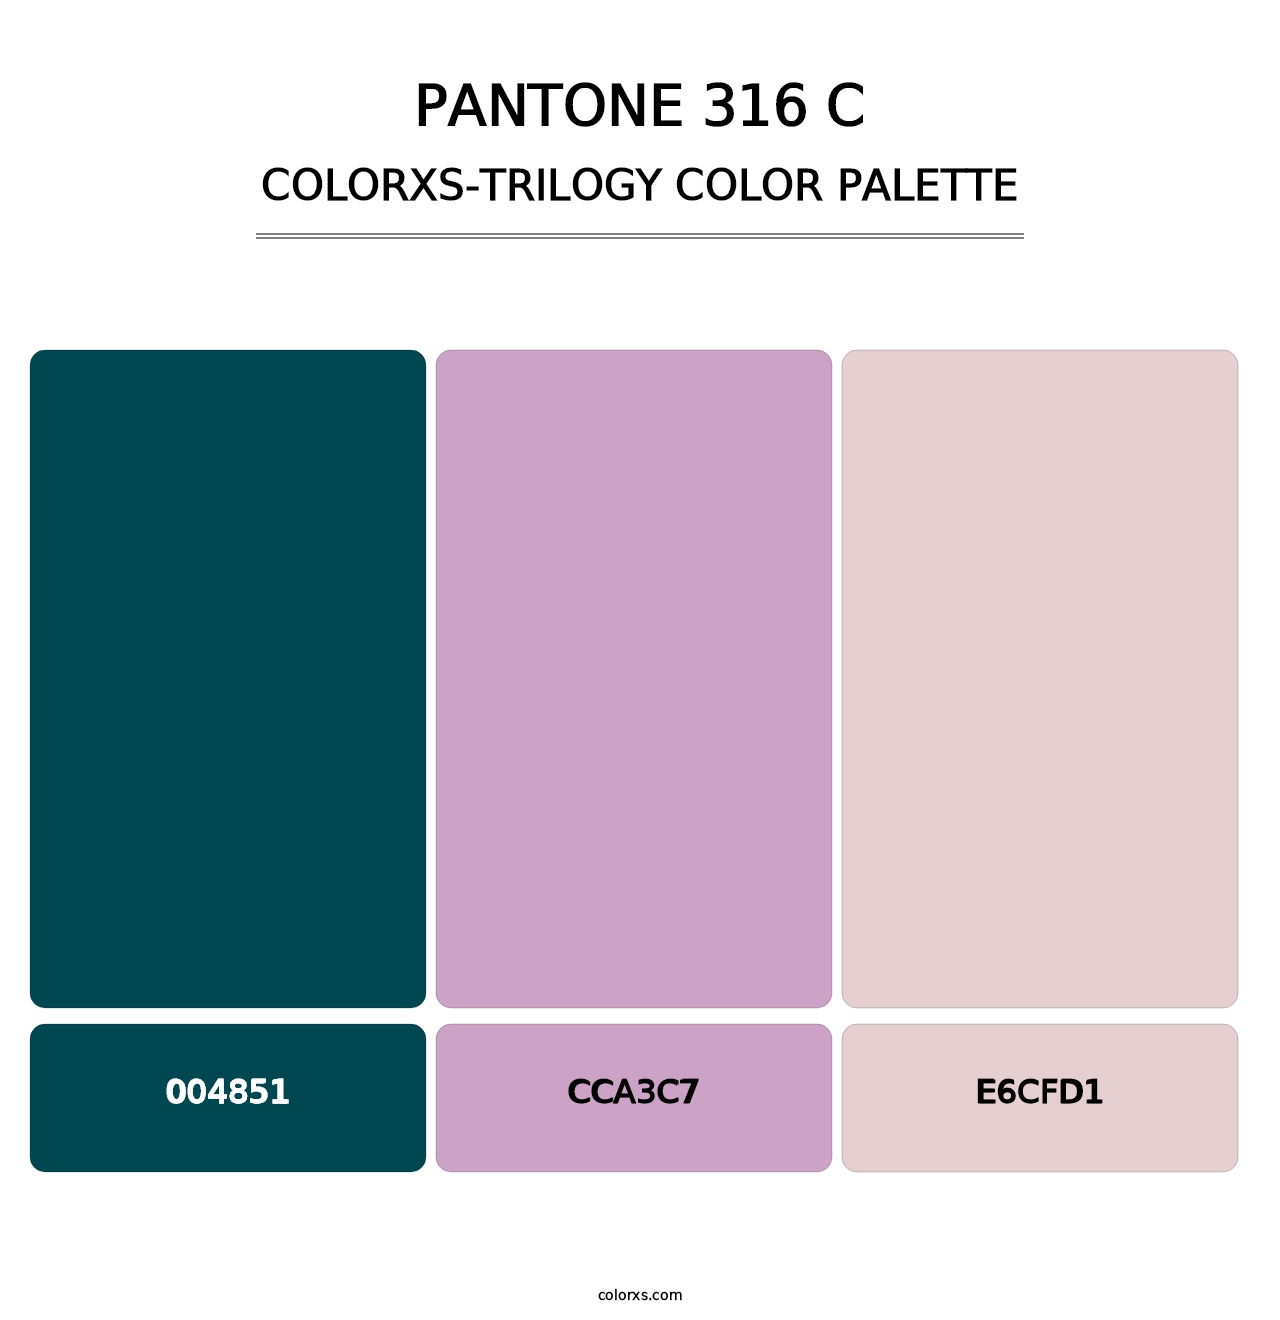 PANTONE 316 C - Colorxs Trilogy Palette